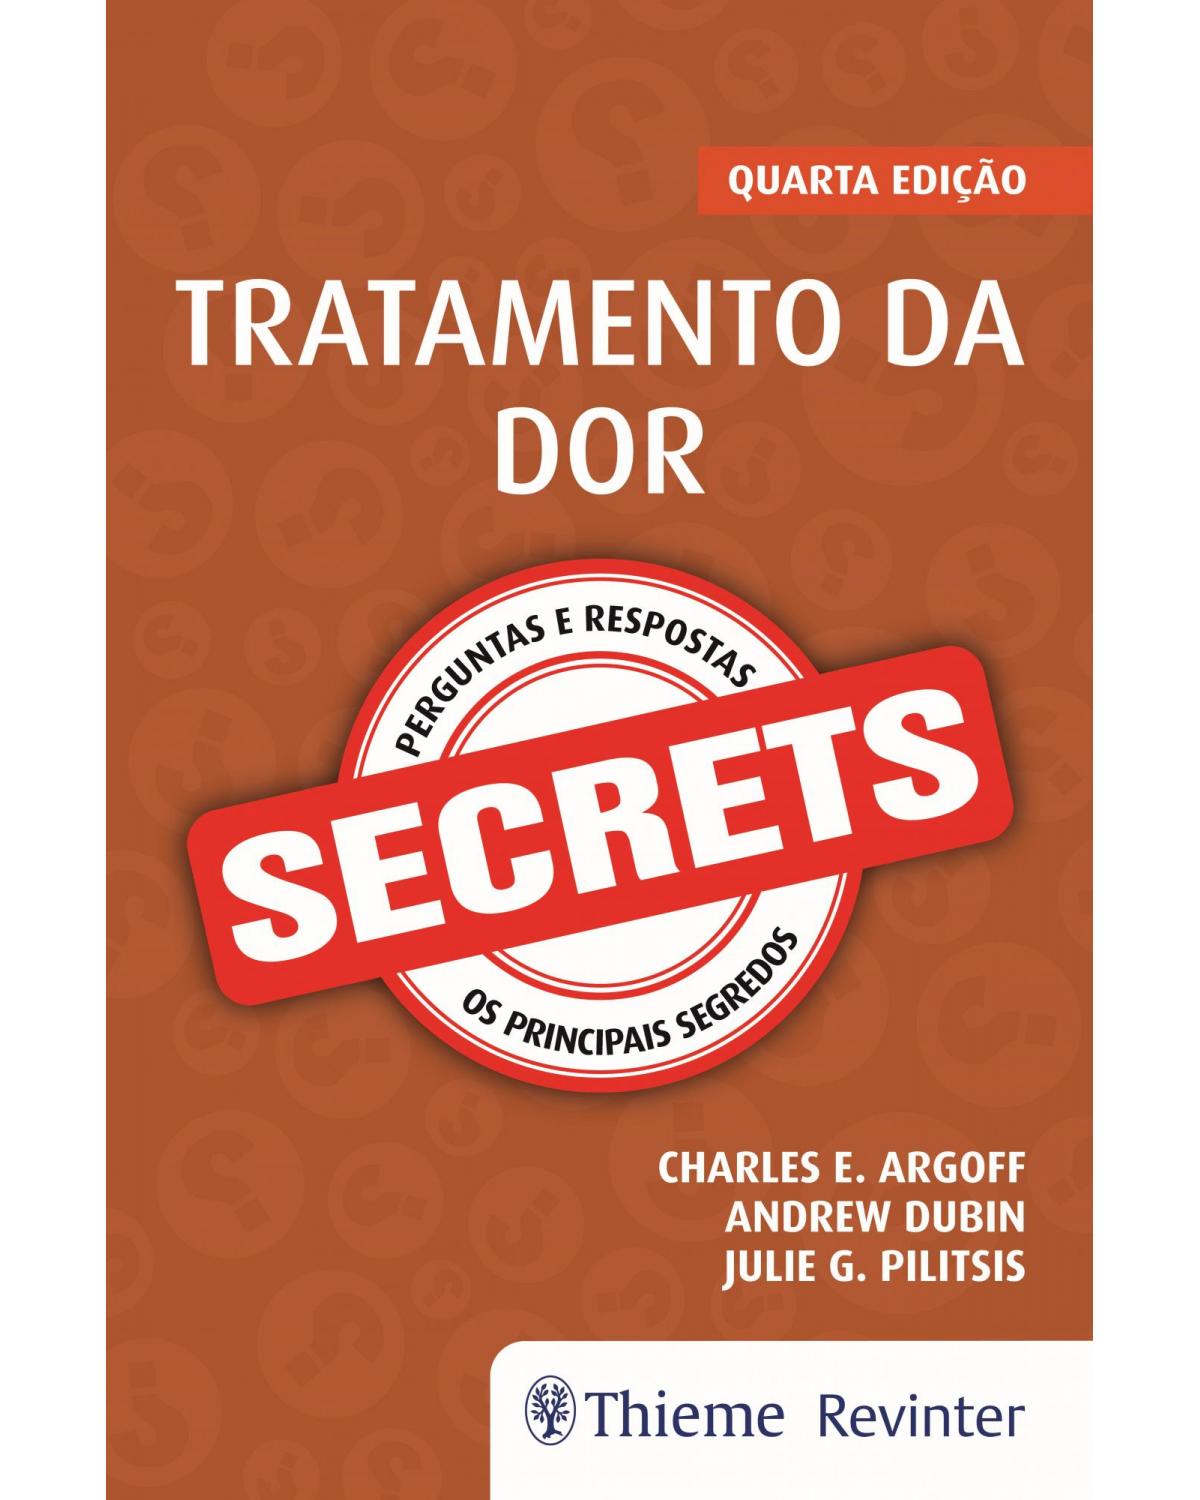 Secrets - tratamento da dor - 4ª Edição | 2019